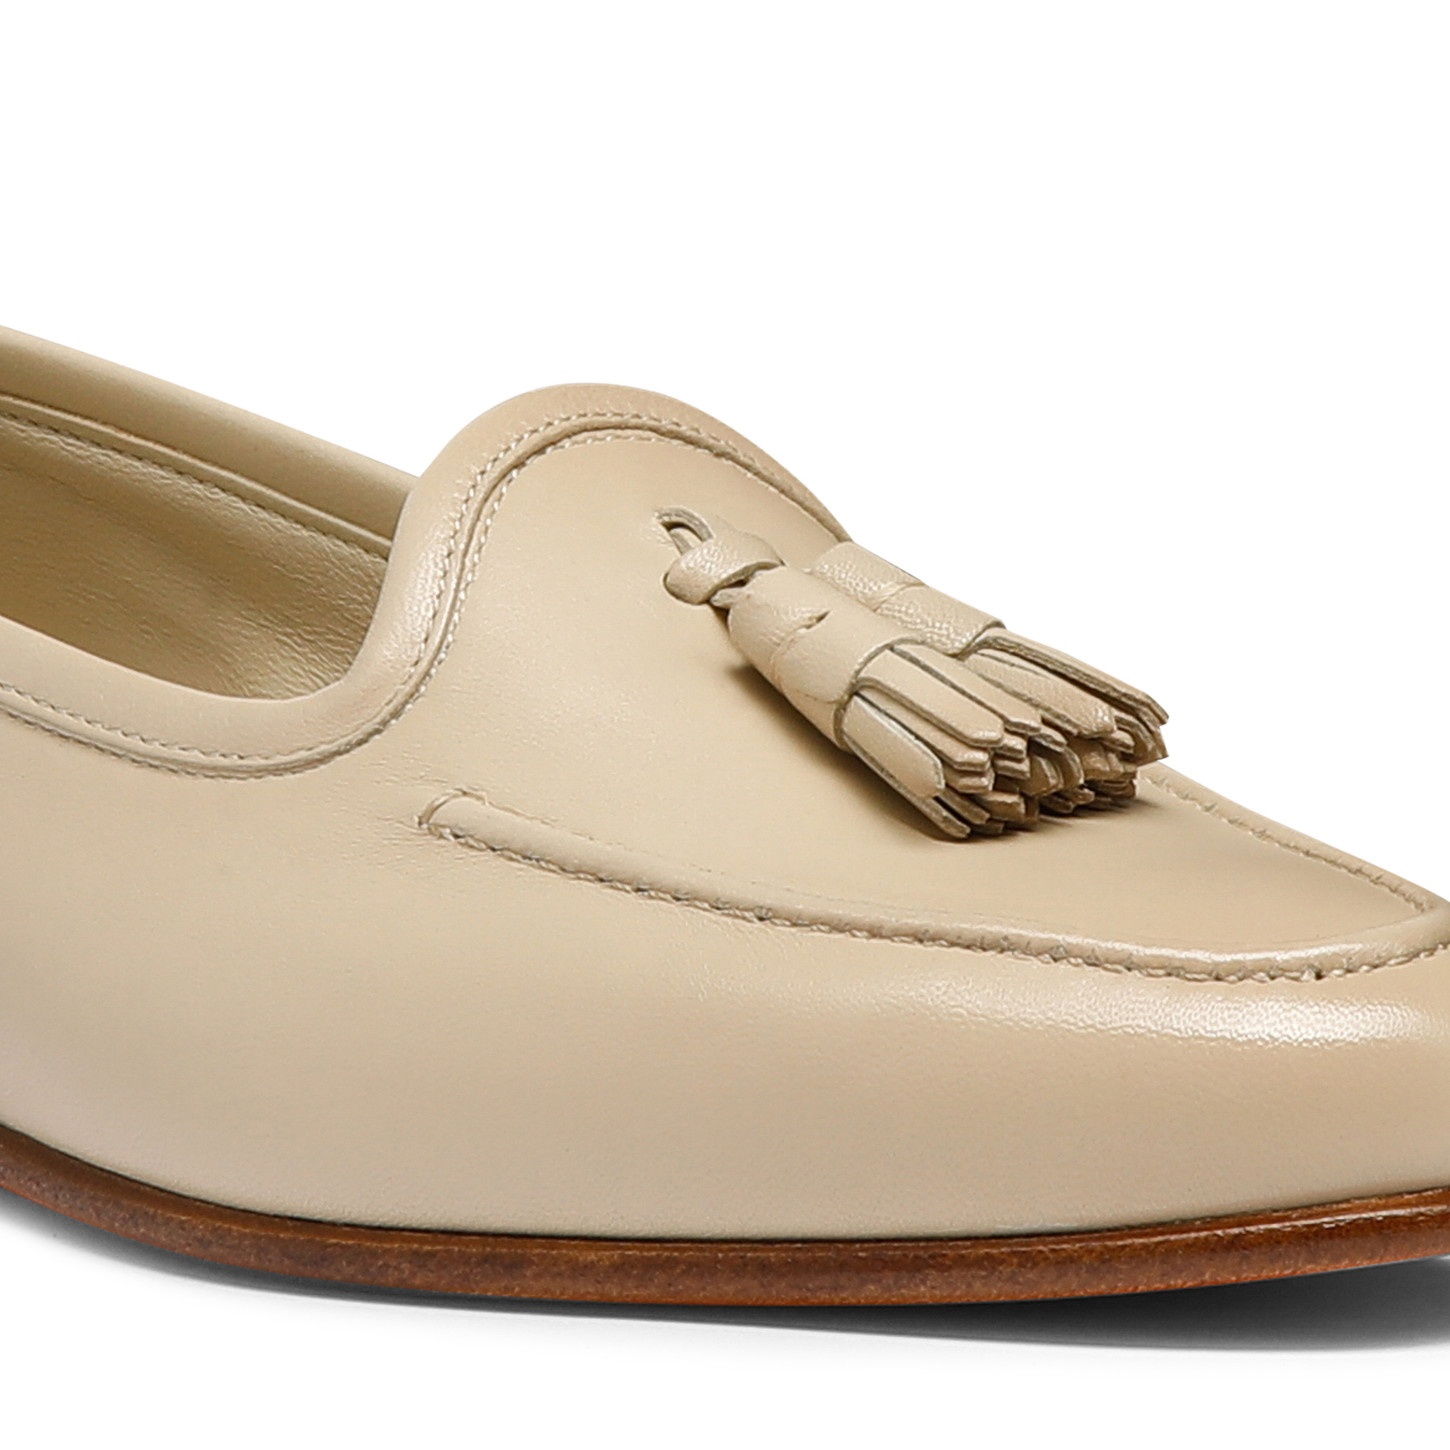 Women's white leather Andrea tassel loafer - 5